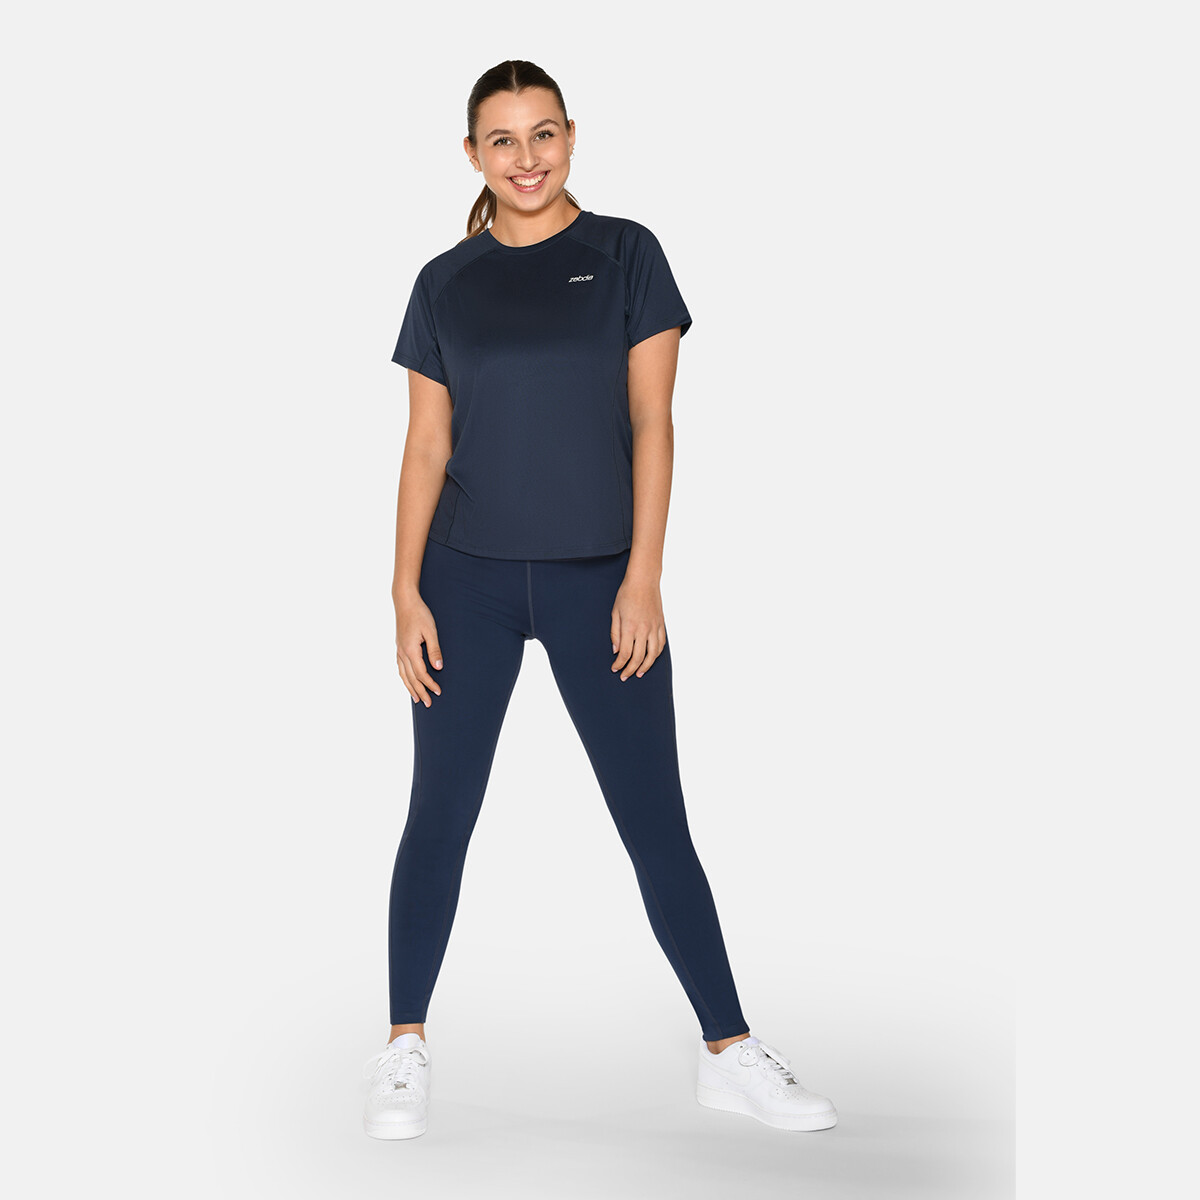 Billede af Zebdia Women Sports T-shirt, Farve: Blå, Størrelse: L, Dame hos Netlingeri.dk